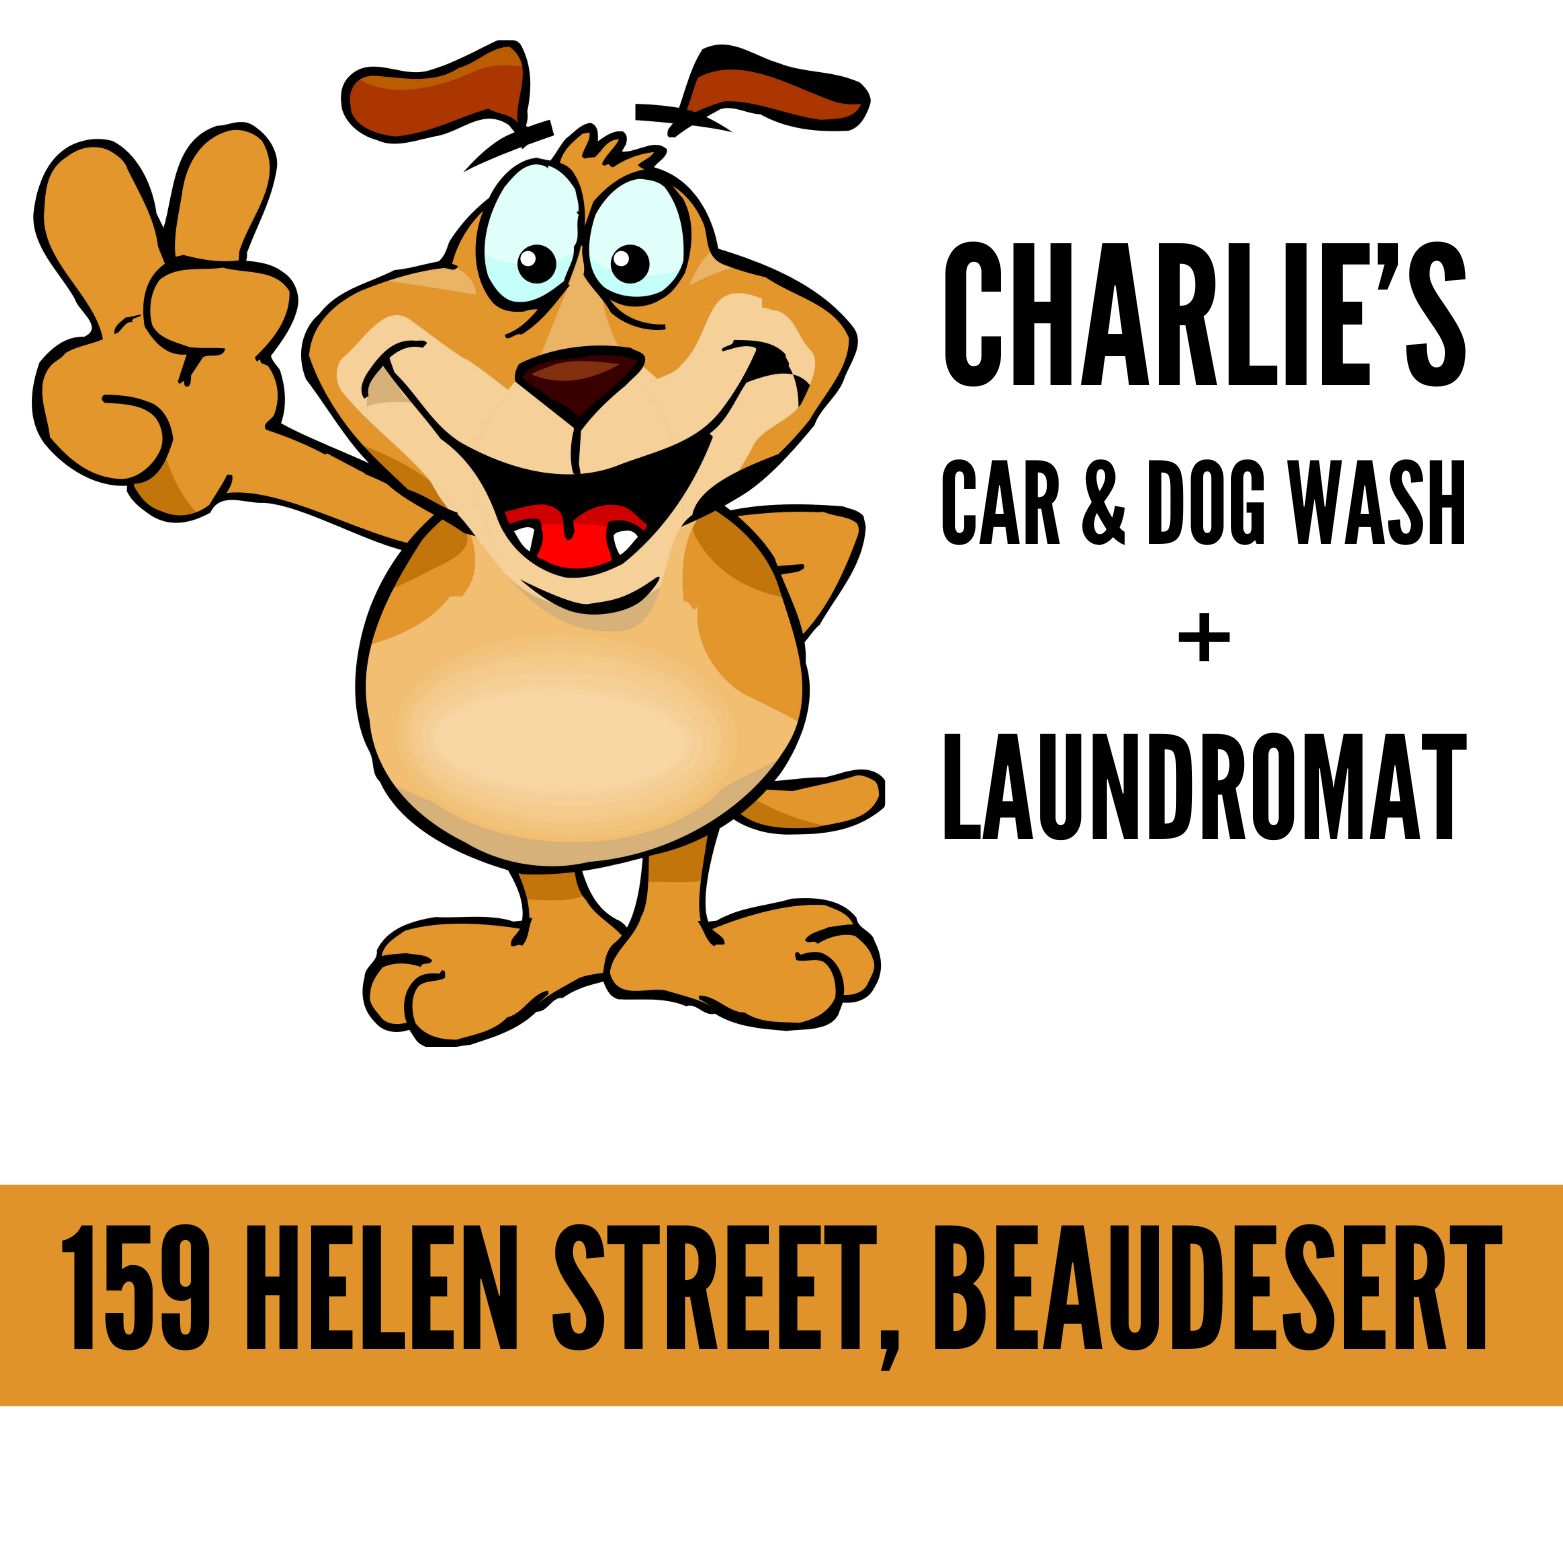 Charlie's Car & Dog Wash